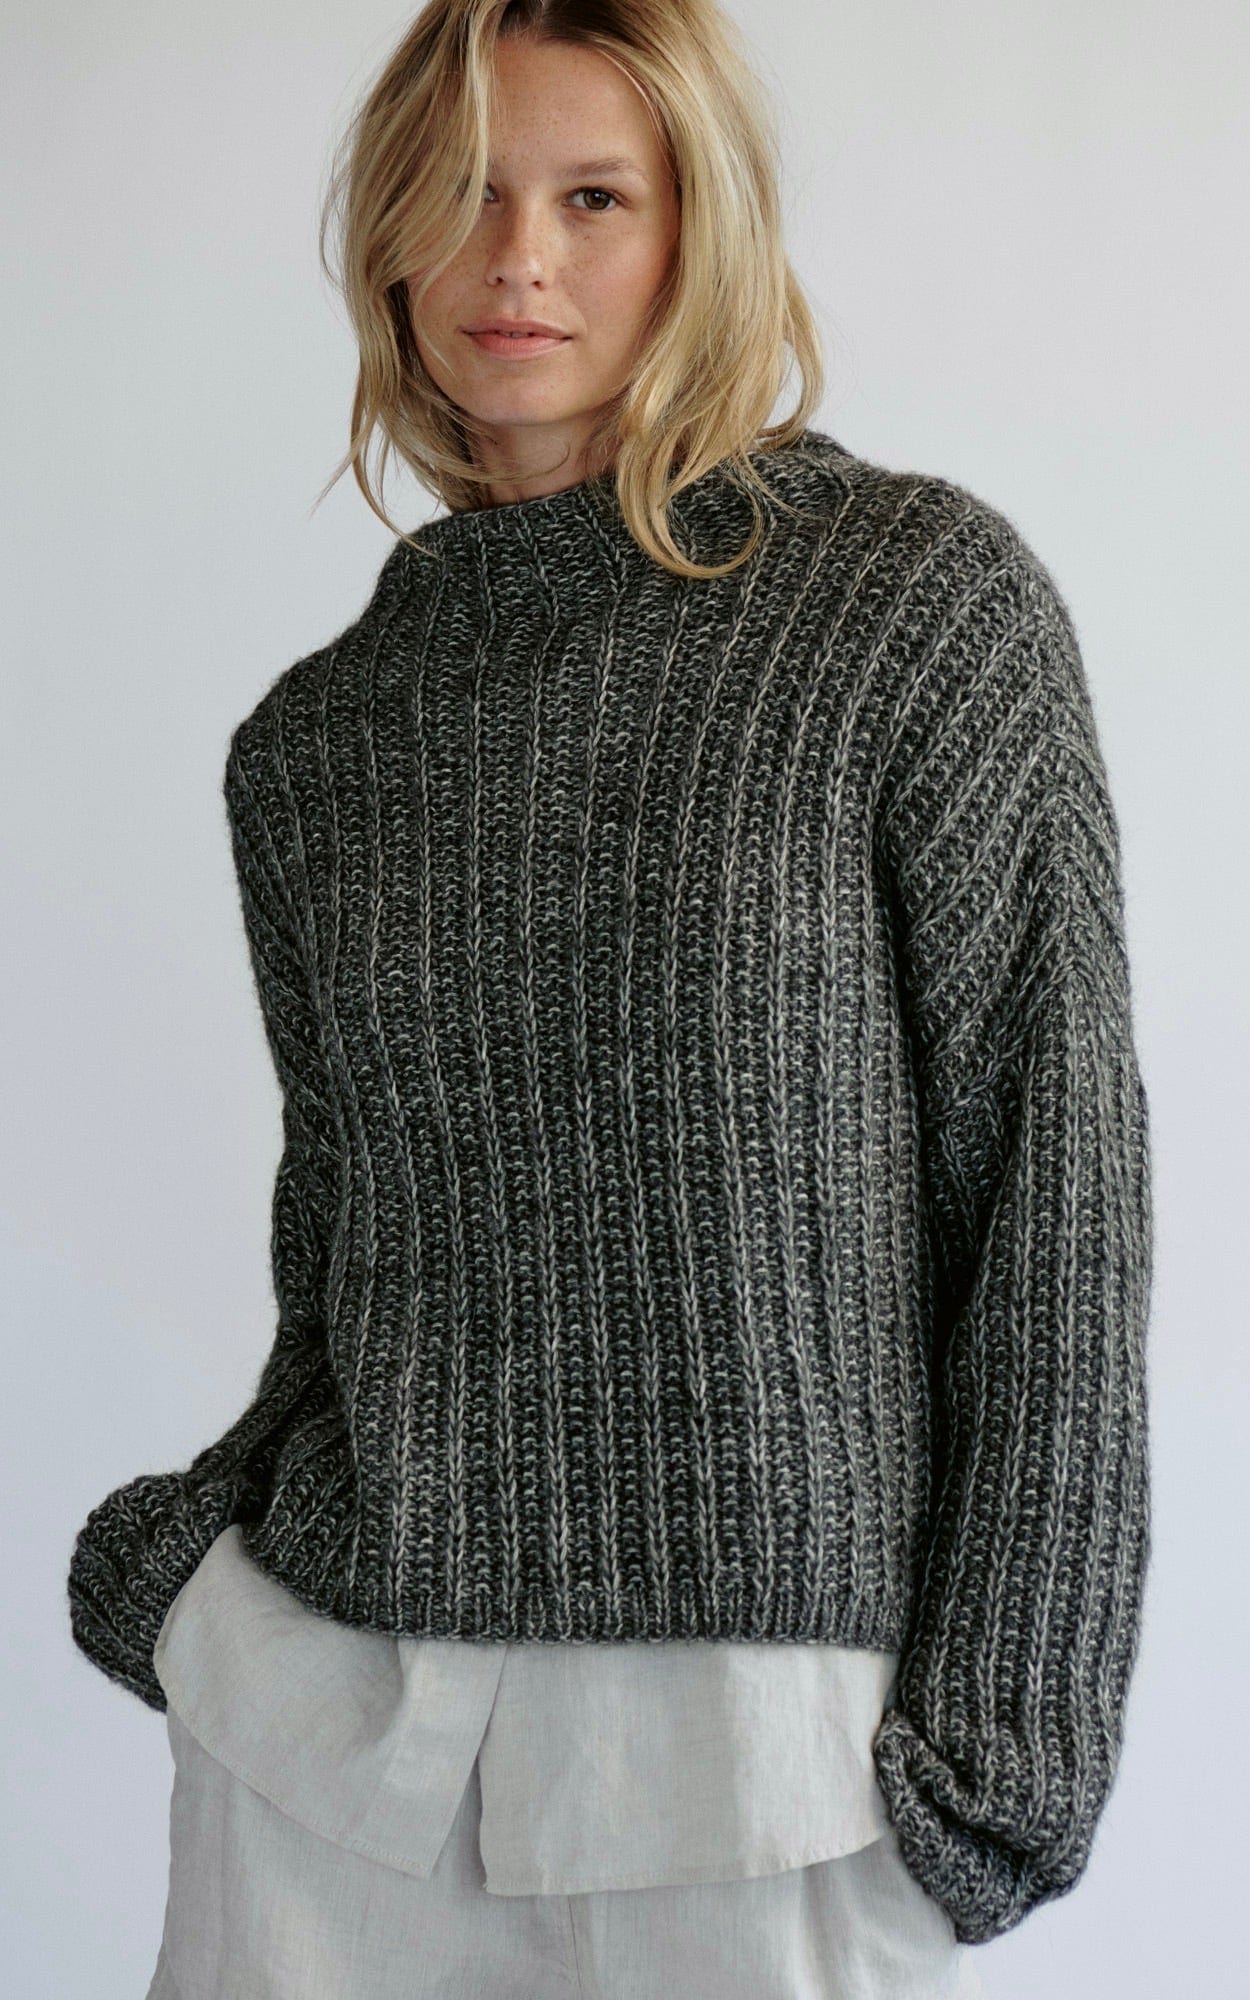 Pullover mit Rippenmuster - NATURAL ALPACA PELO - Strickset von LANA GROSSA jetzt online kaufen bei OONIQUE